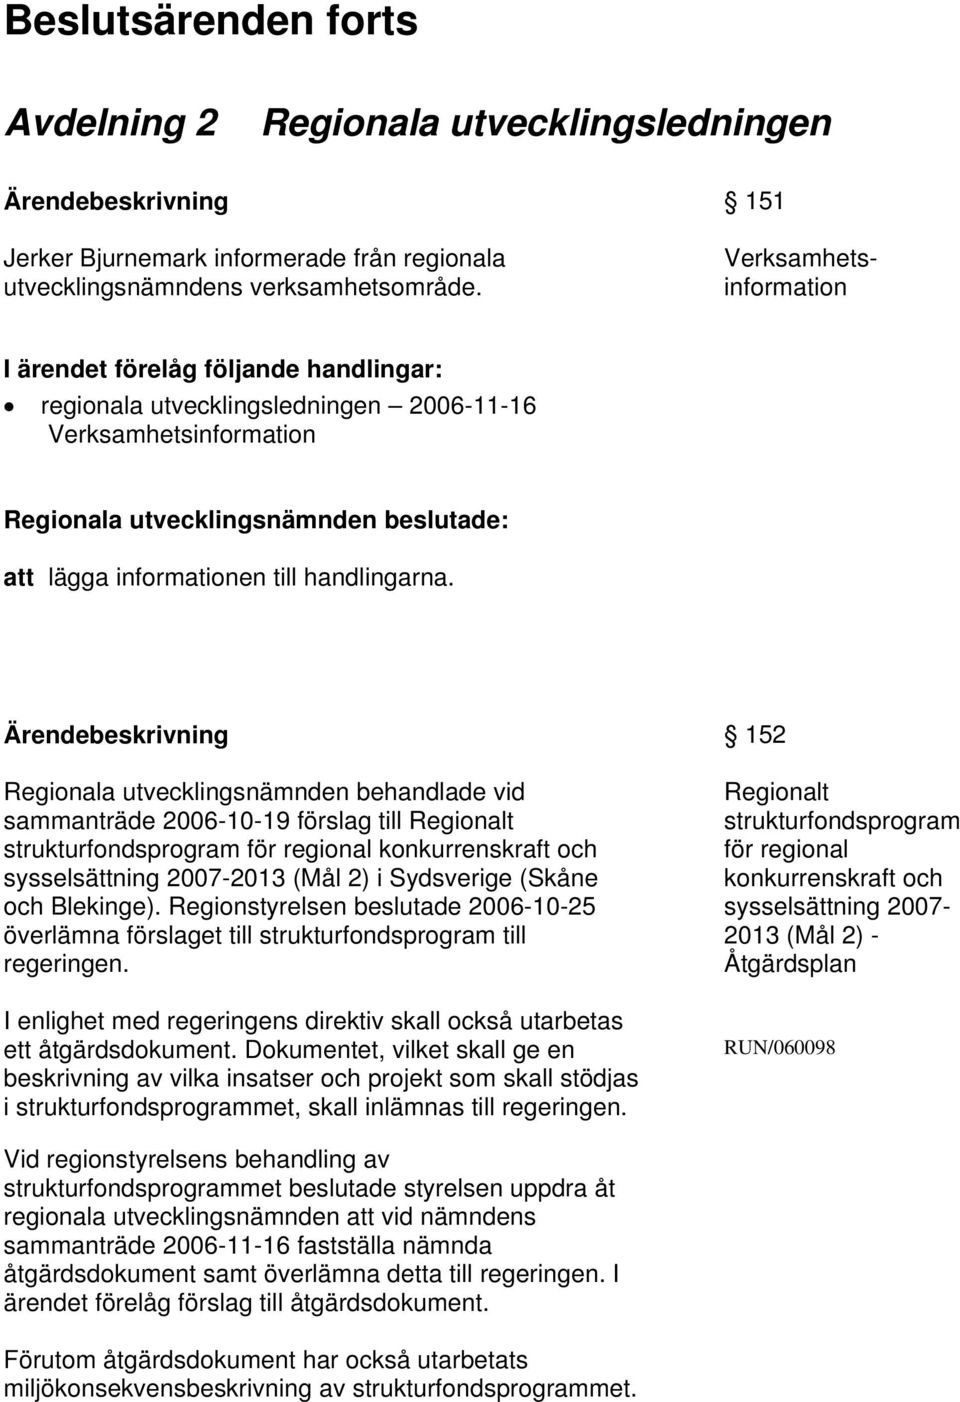 Regionala utvecklingsnämnden behandlade vid sammanträde 2006-10-19 förslag till Regionalt strukturfondsprogram för regional konkurrenskraft och sysselsättning 2007-2013 (Mål 2) i Sydsverige (Skåne